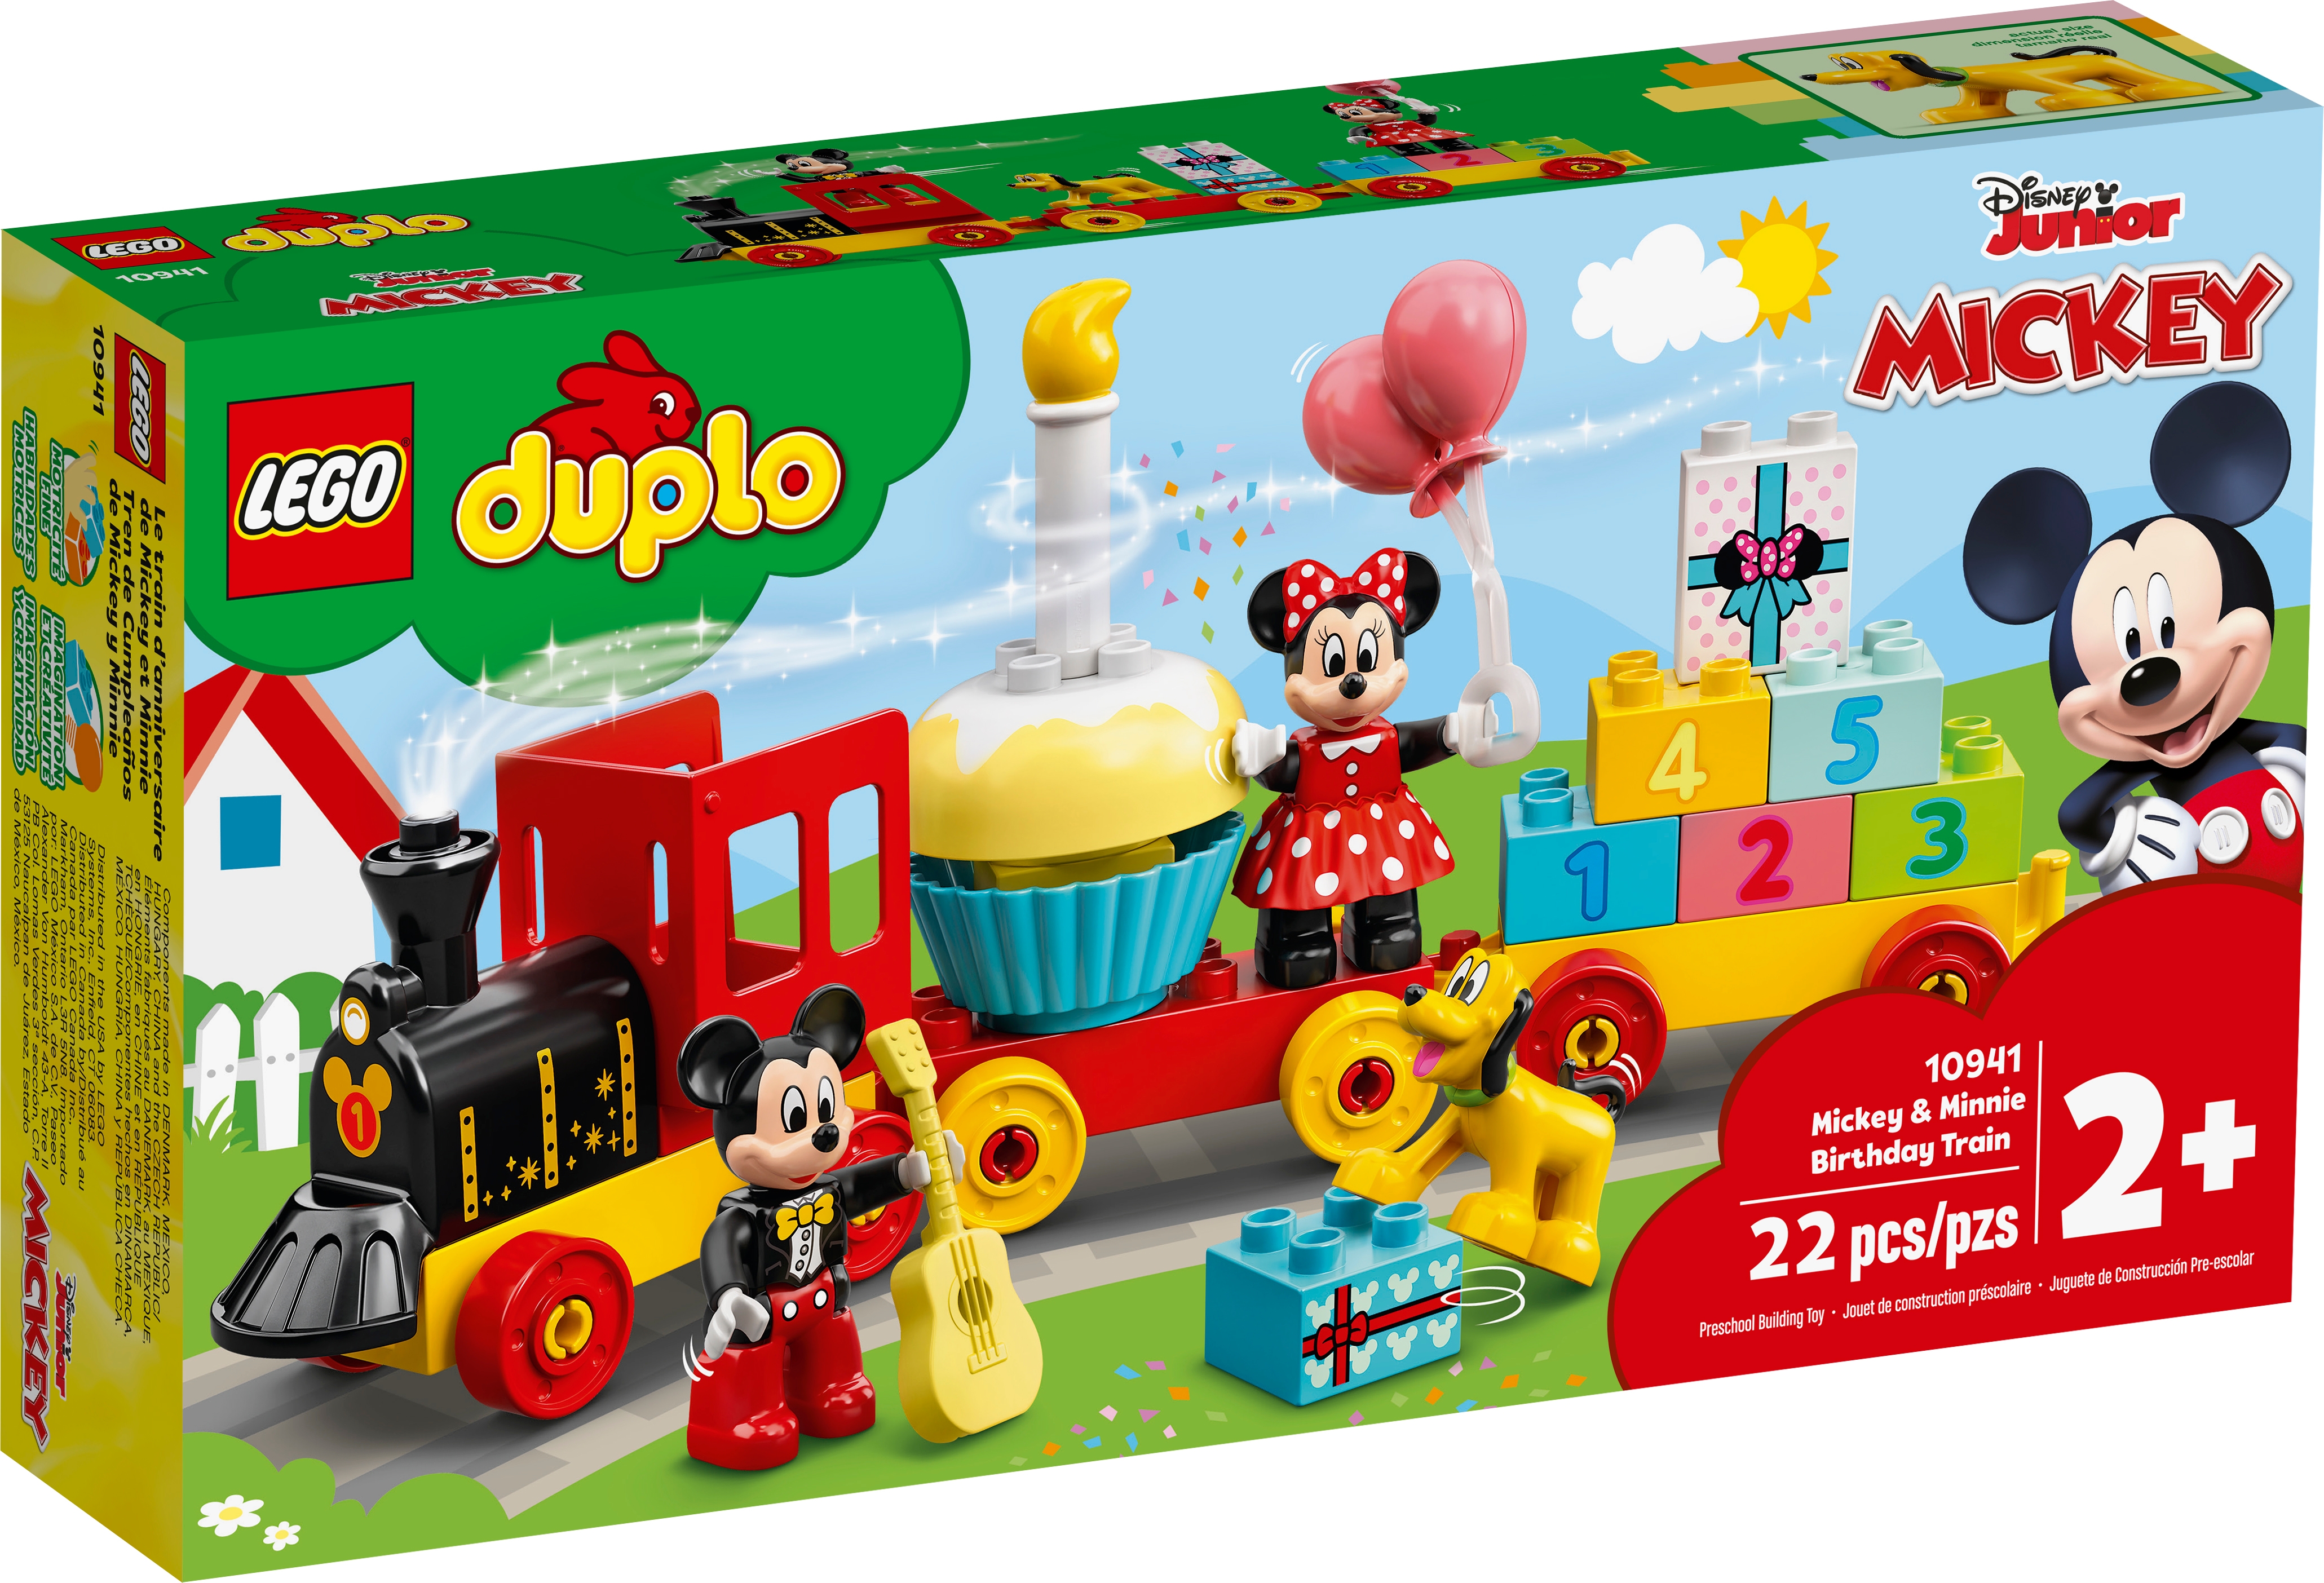 Le Train D Anniversaire De Mickey Et Minnie Disney Boutique Lego Officielle Be